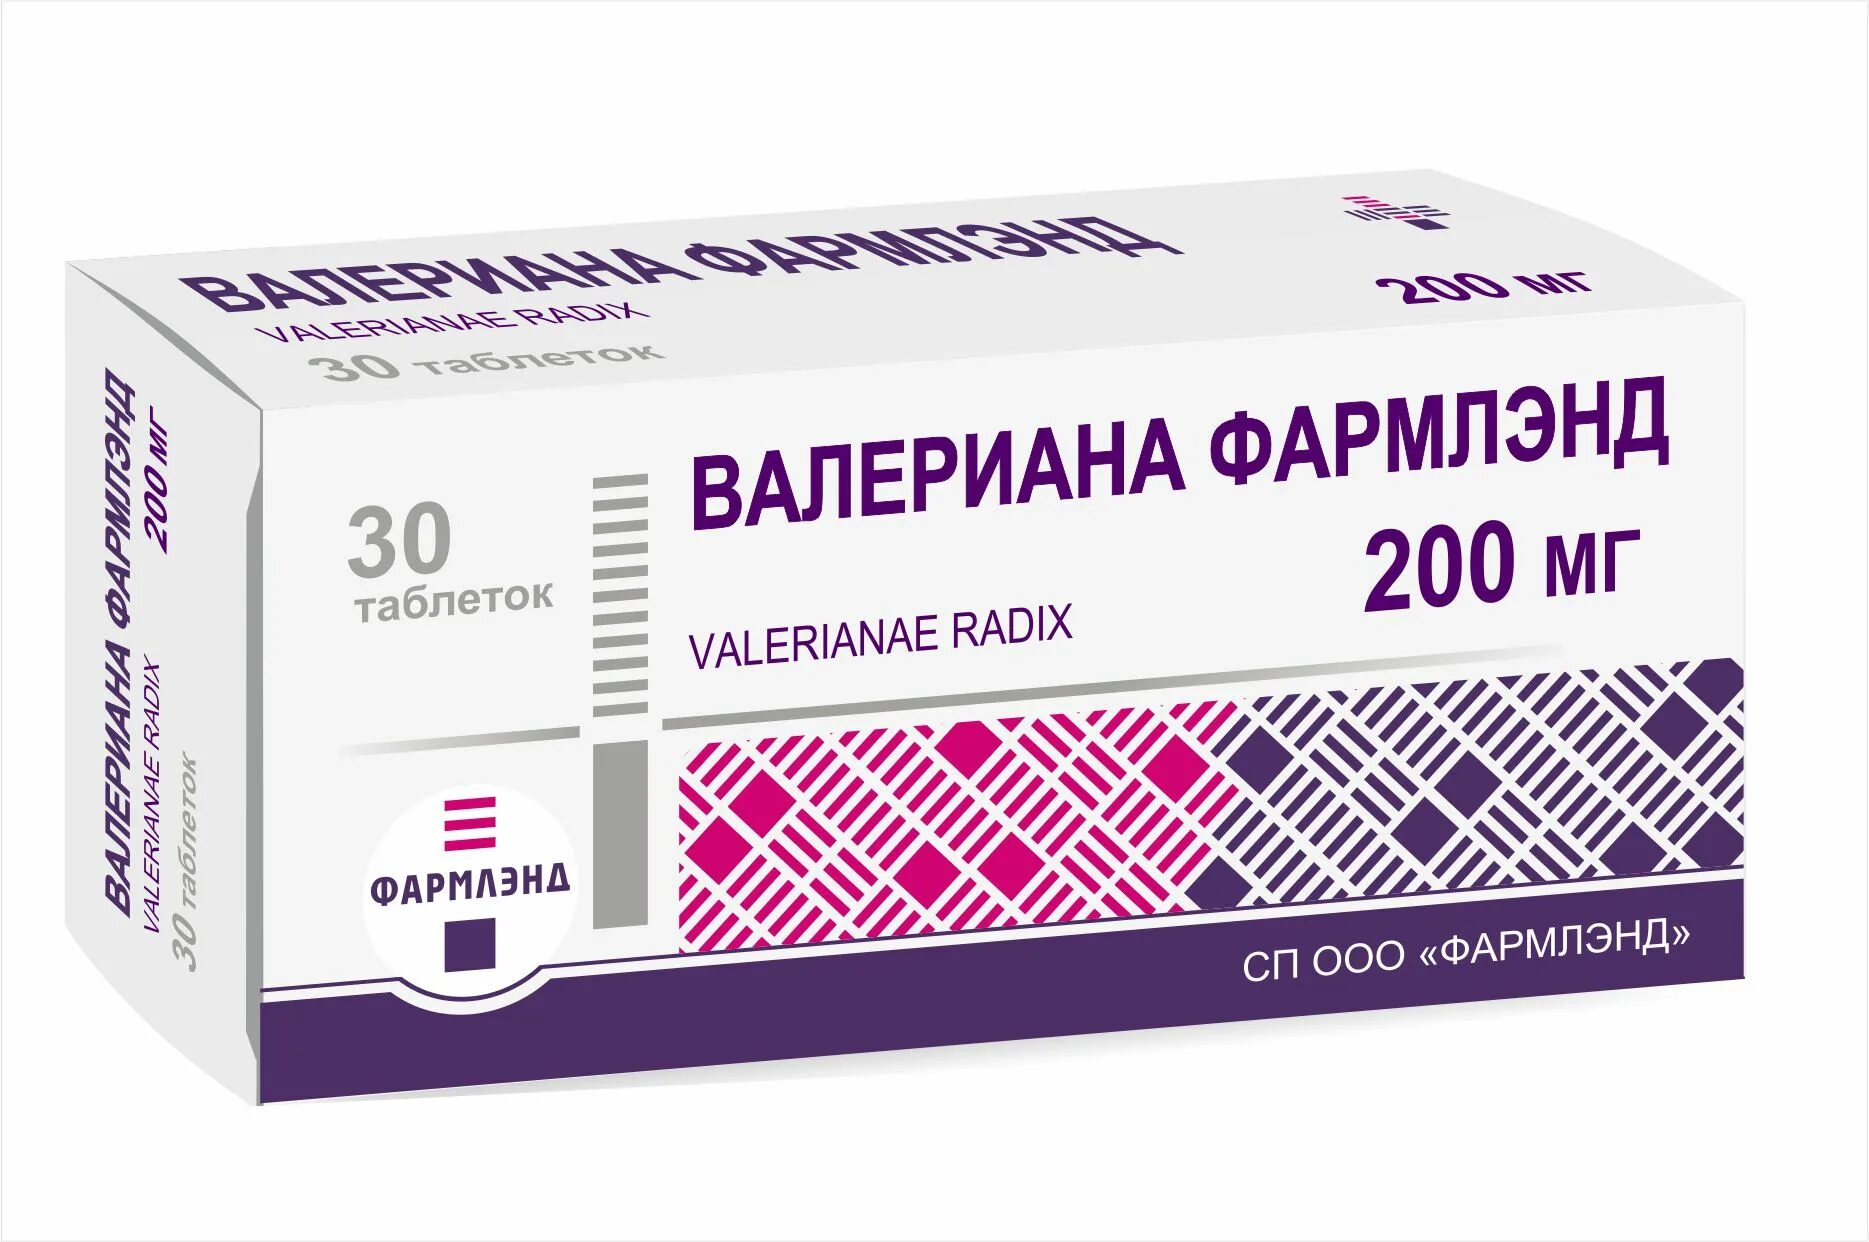 Белорусская валерьянка. Валериана в таблетках 200 мг. Таблетки валерианы 200мг. Экстракт валерианы 200мг в таблетках. Валерьянка в таблетках 200мг.